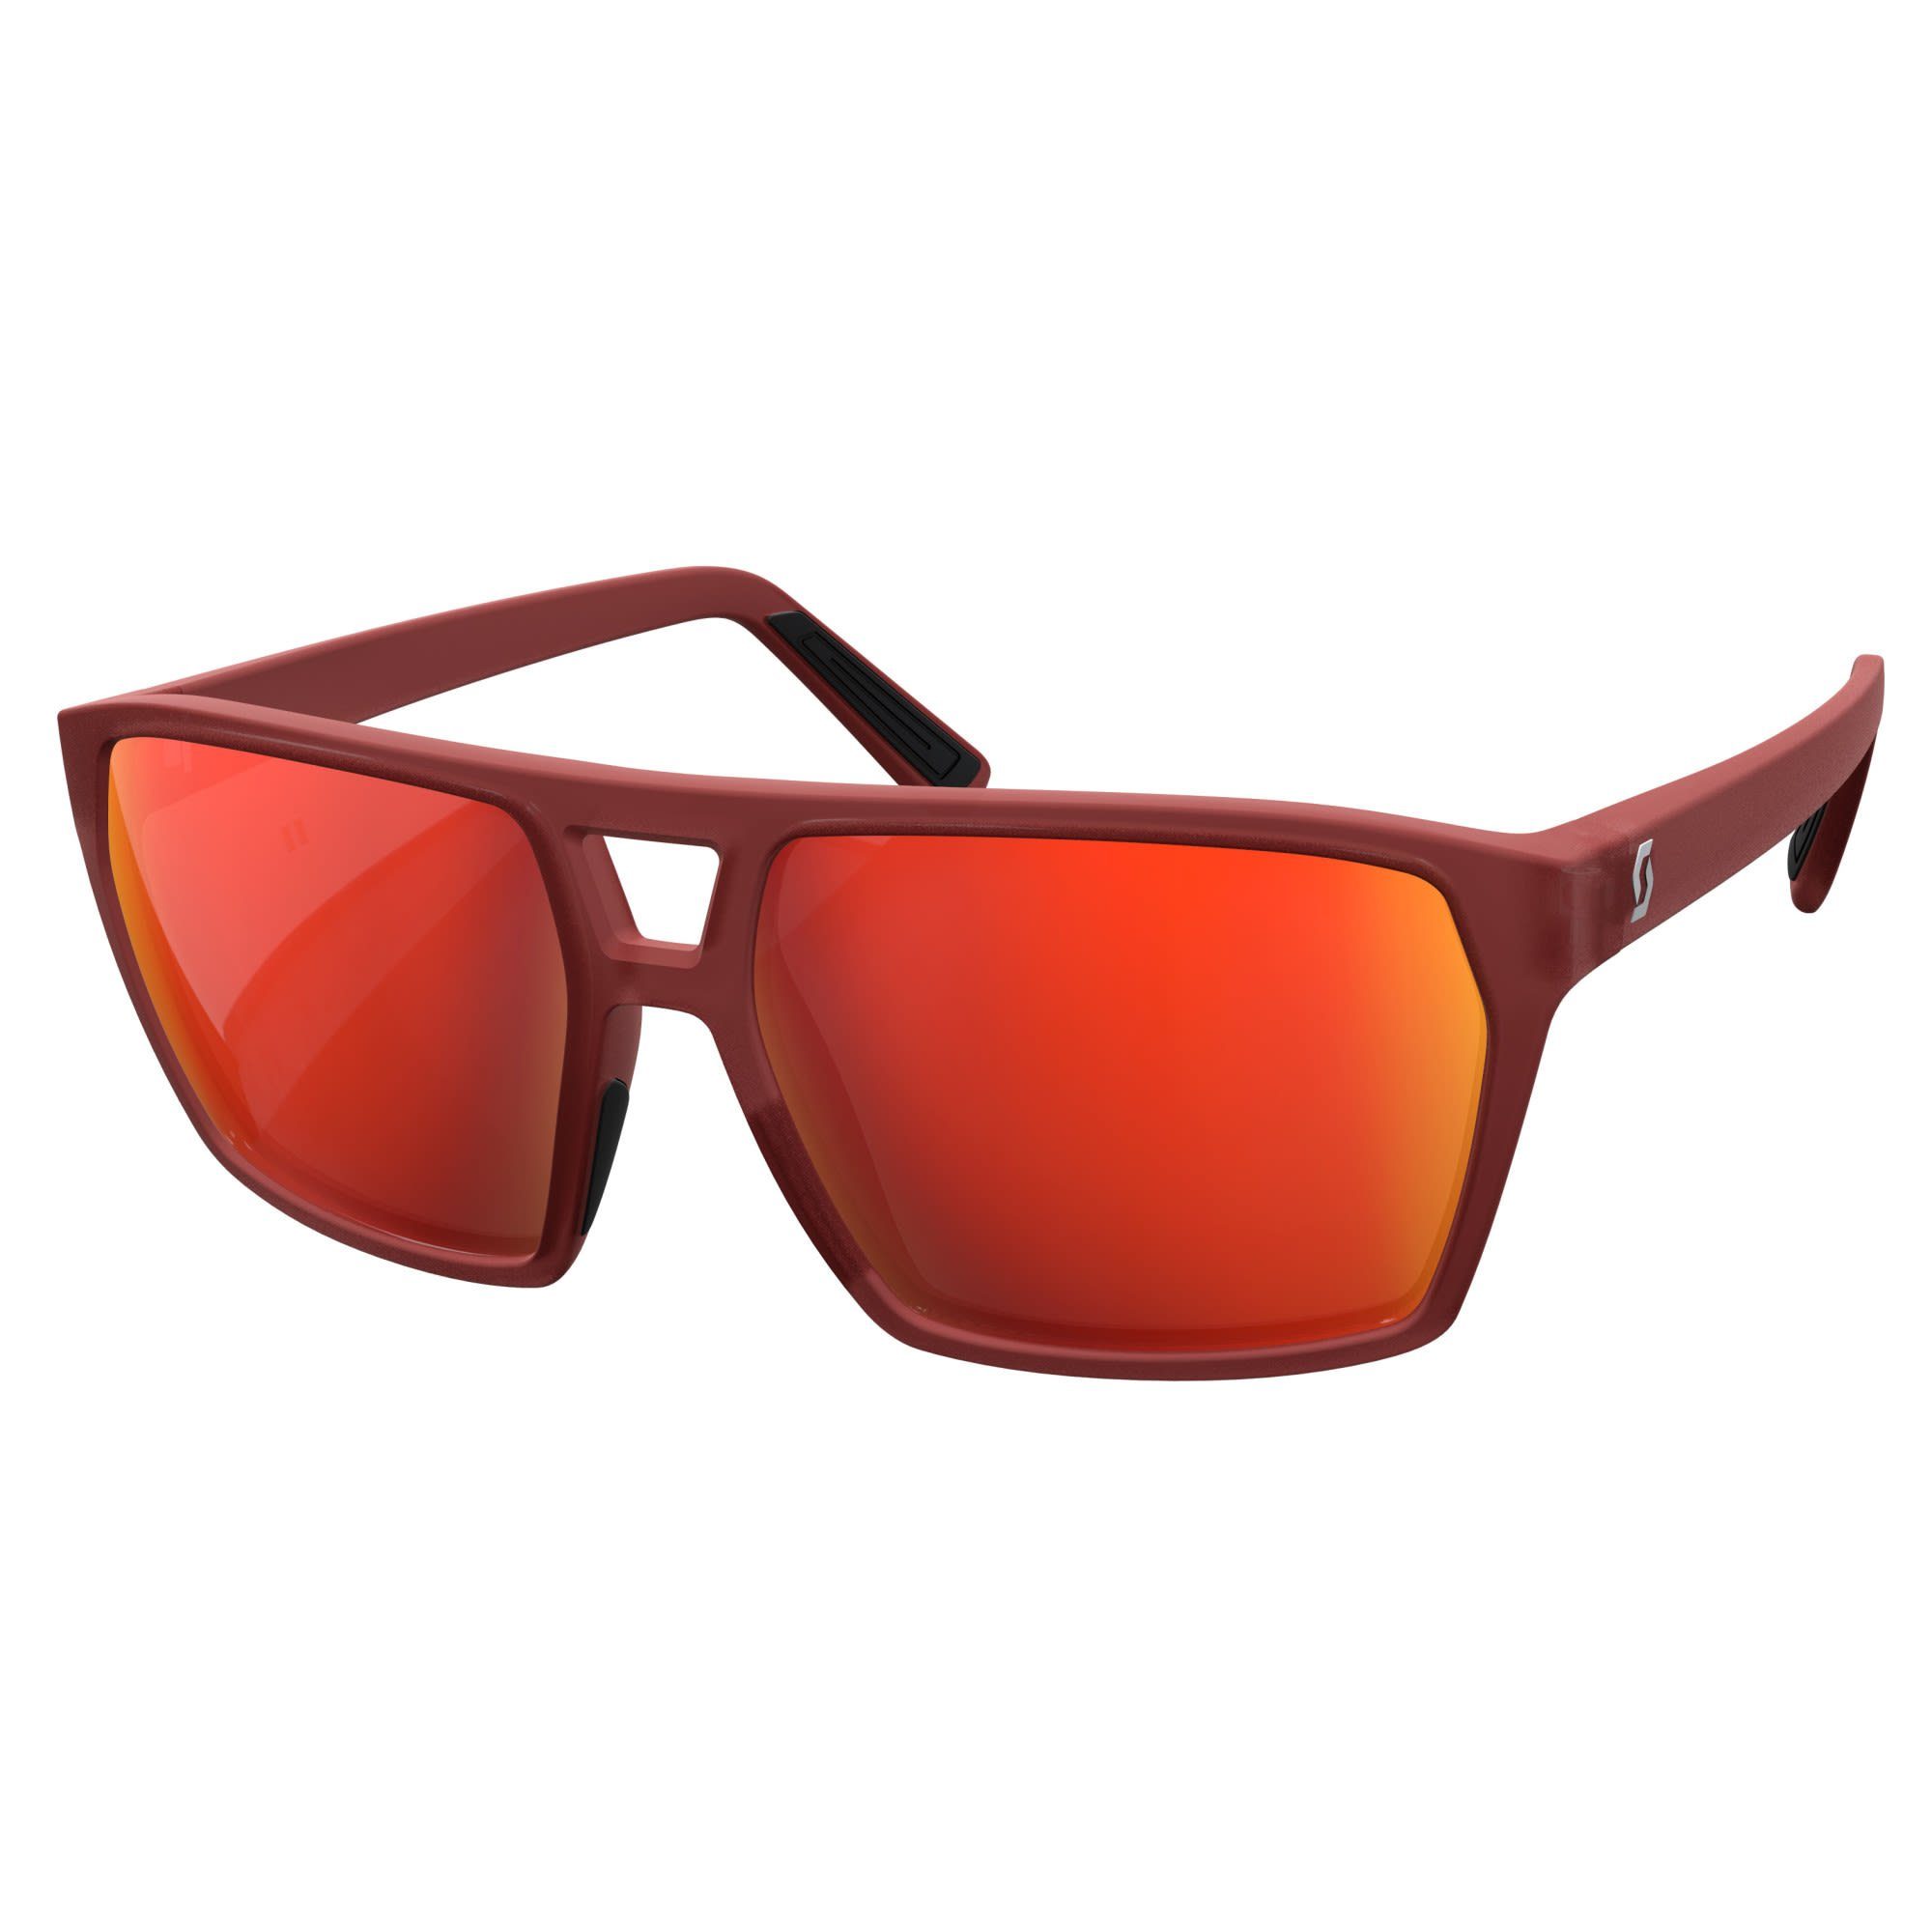 Scott Fahrradbrille Scott Tune Sunglasses Accessoires Merlot Red - Red Chrome